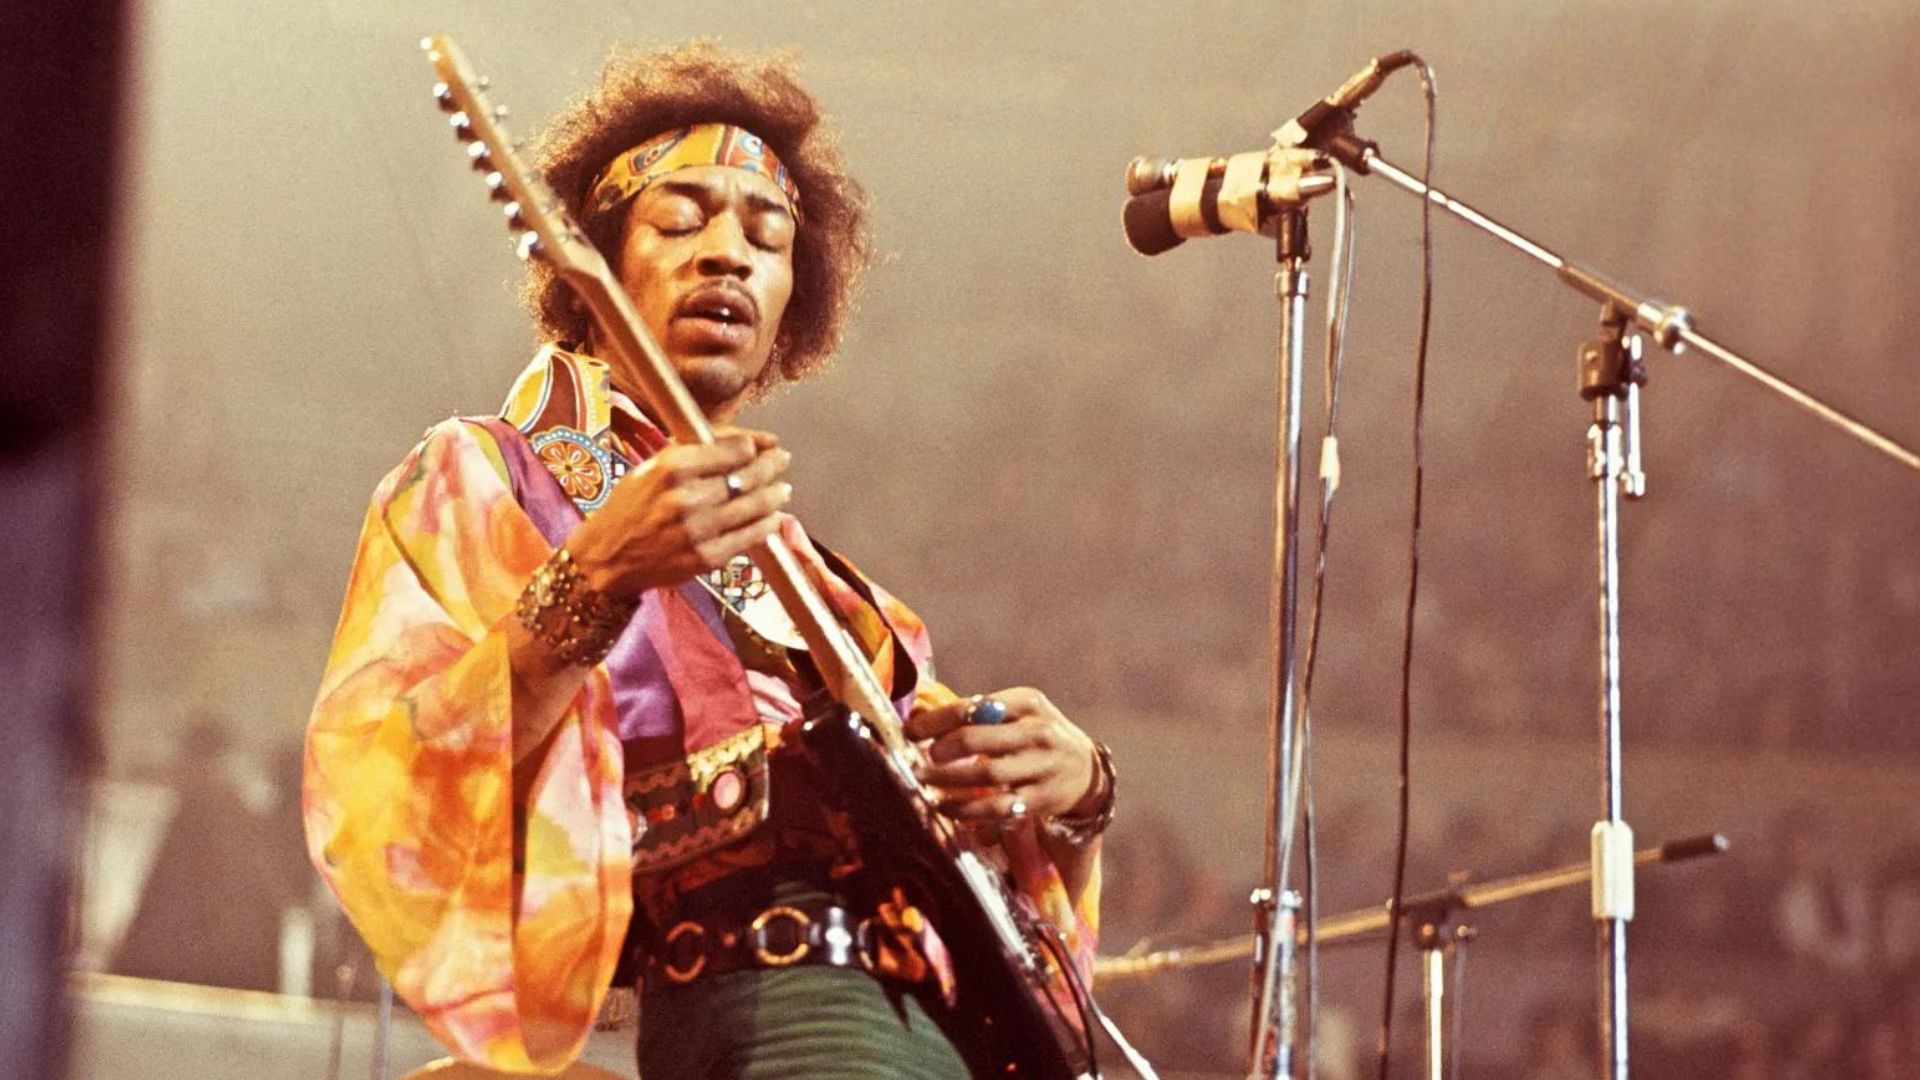  Jimi Hendrix
